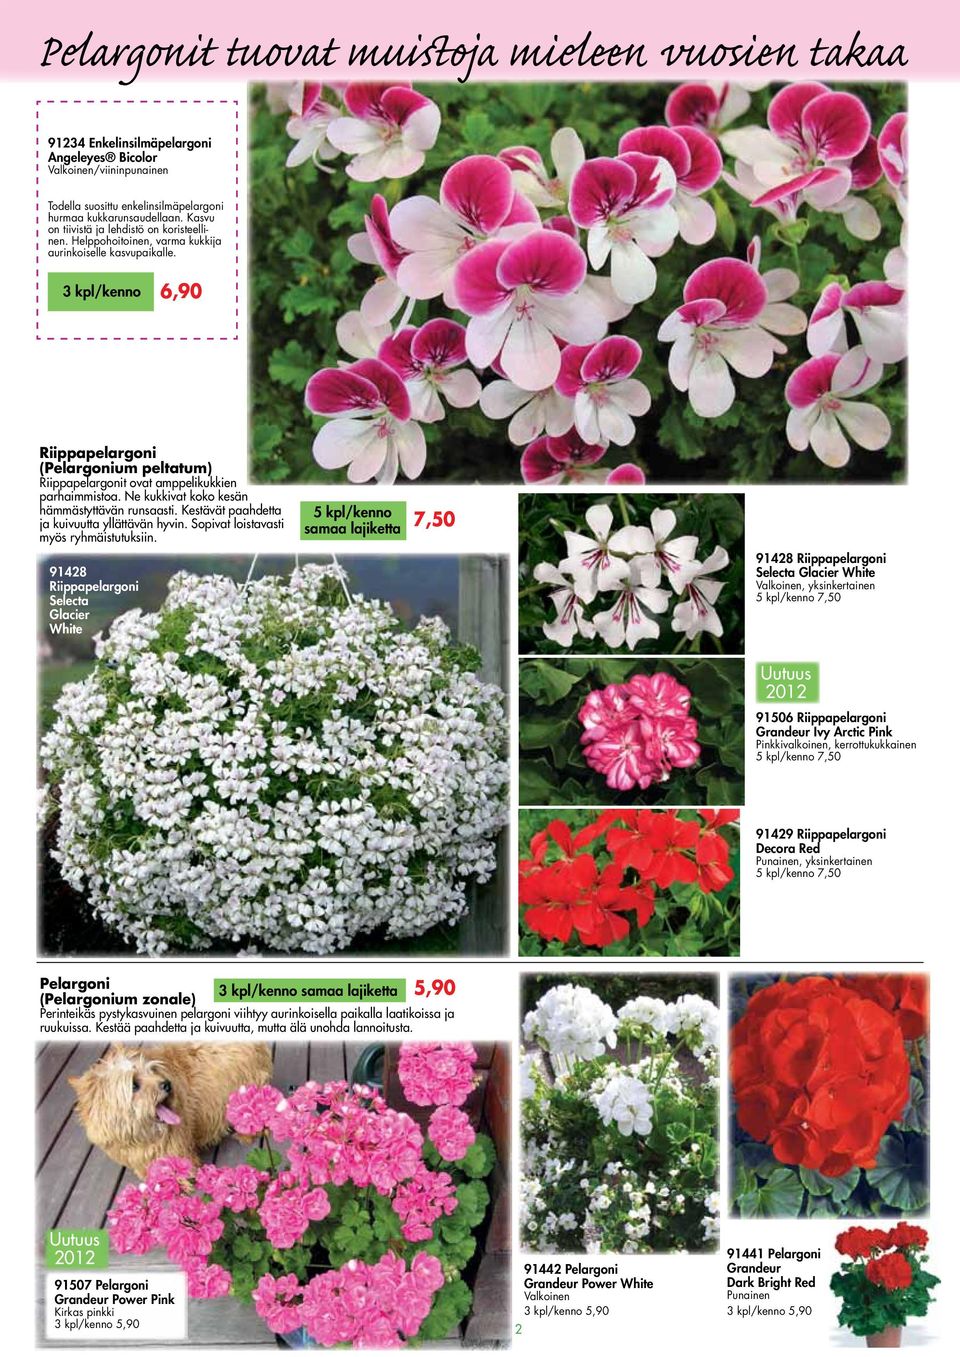 3 kpl/kenno 6,90 Riippapelargoni (Pelargonium peltatum) Riippapelargonit ovat amppelikukkien parhaimmistoa. Ne kukkivat koko kesän hämmästyttävän runsaasti.